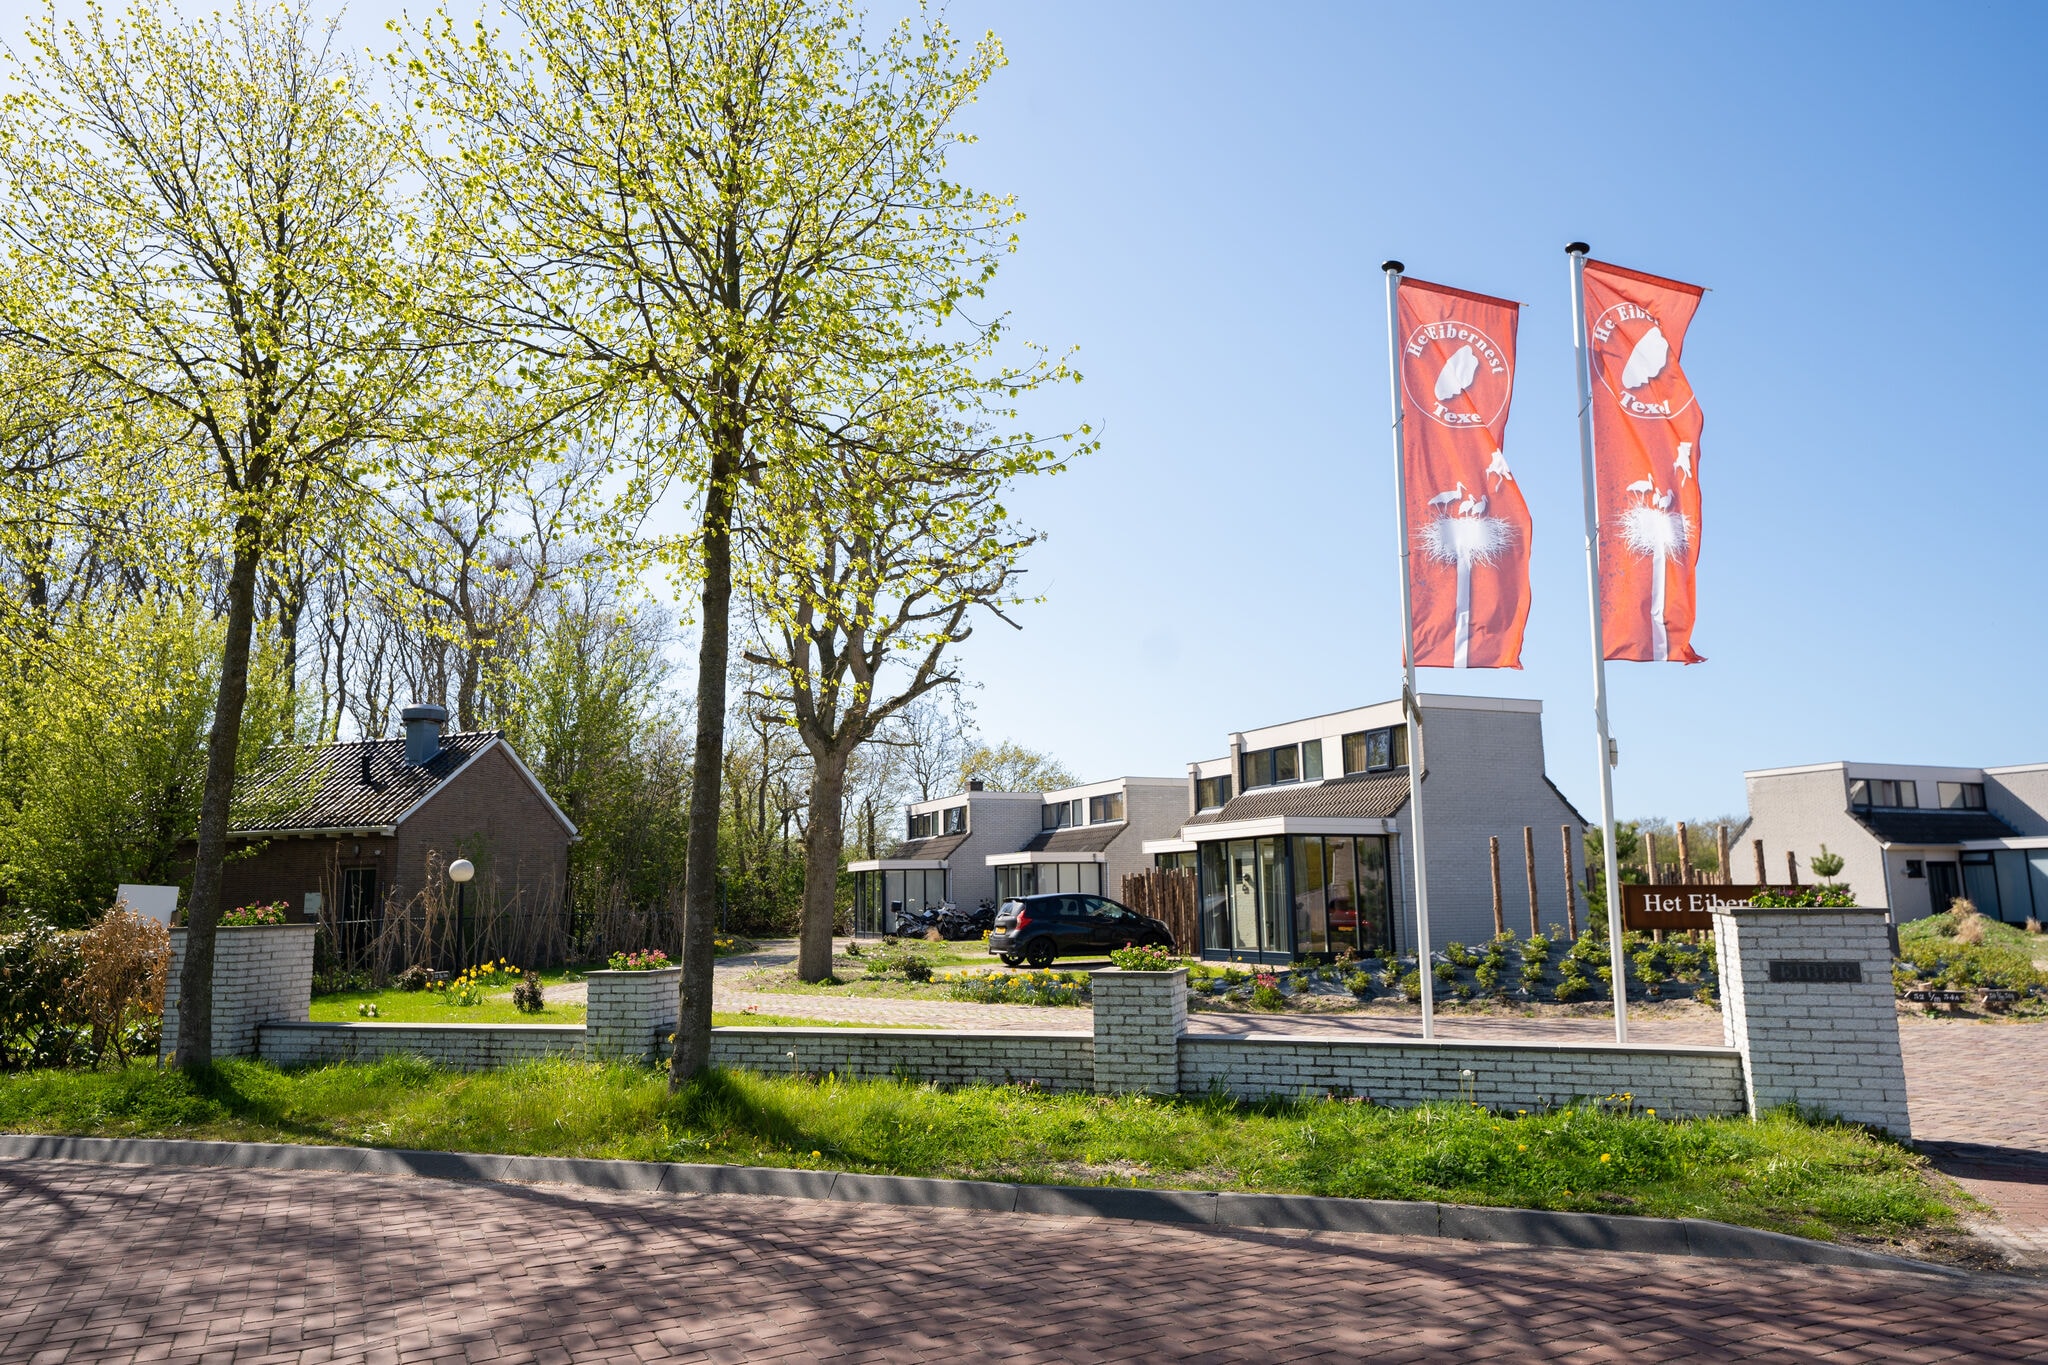 Jolie maison avec lave-vaisselle dans un parc de vacances, situé sur Texel